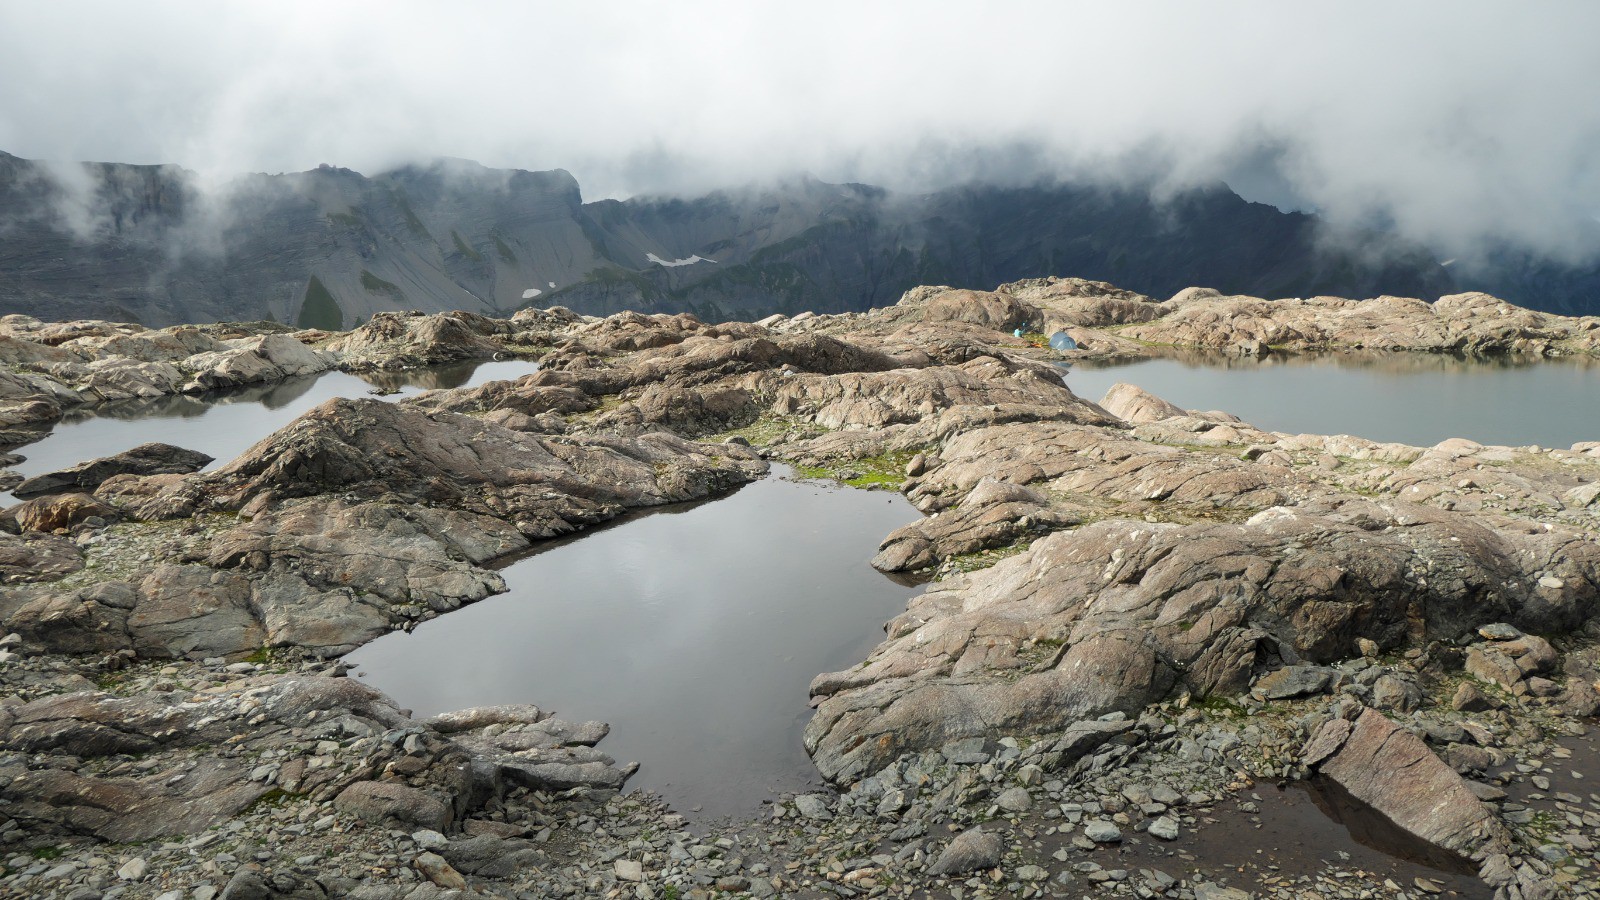 Jour 1 : bivouac perché à 2600 m, entre les roches moutonnées qui bordent de petits lacs d'altitude